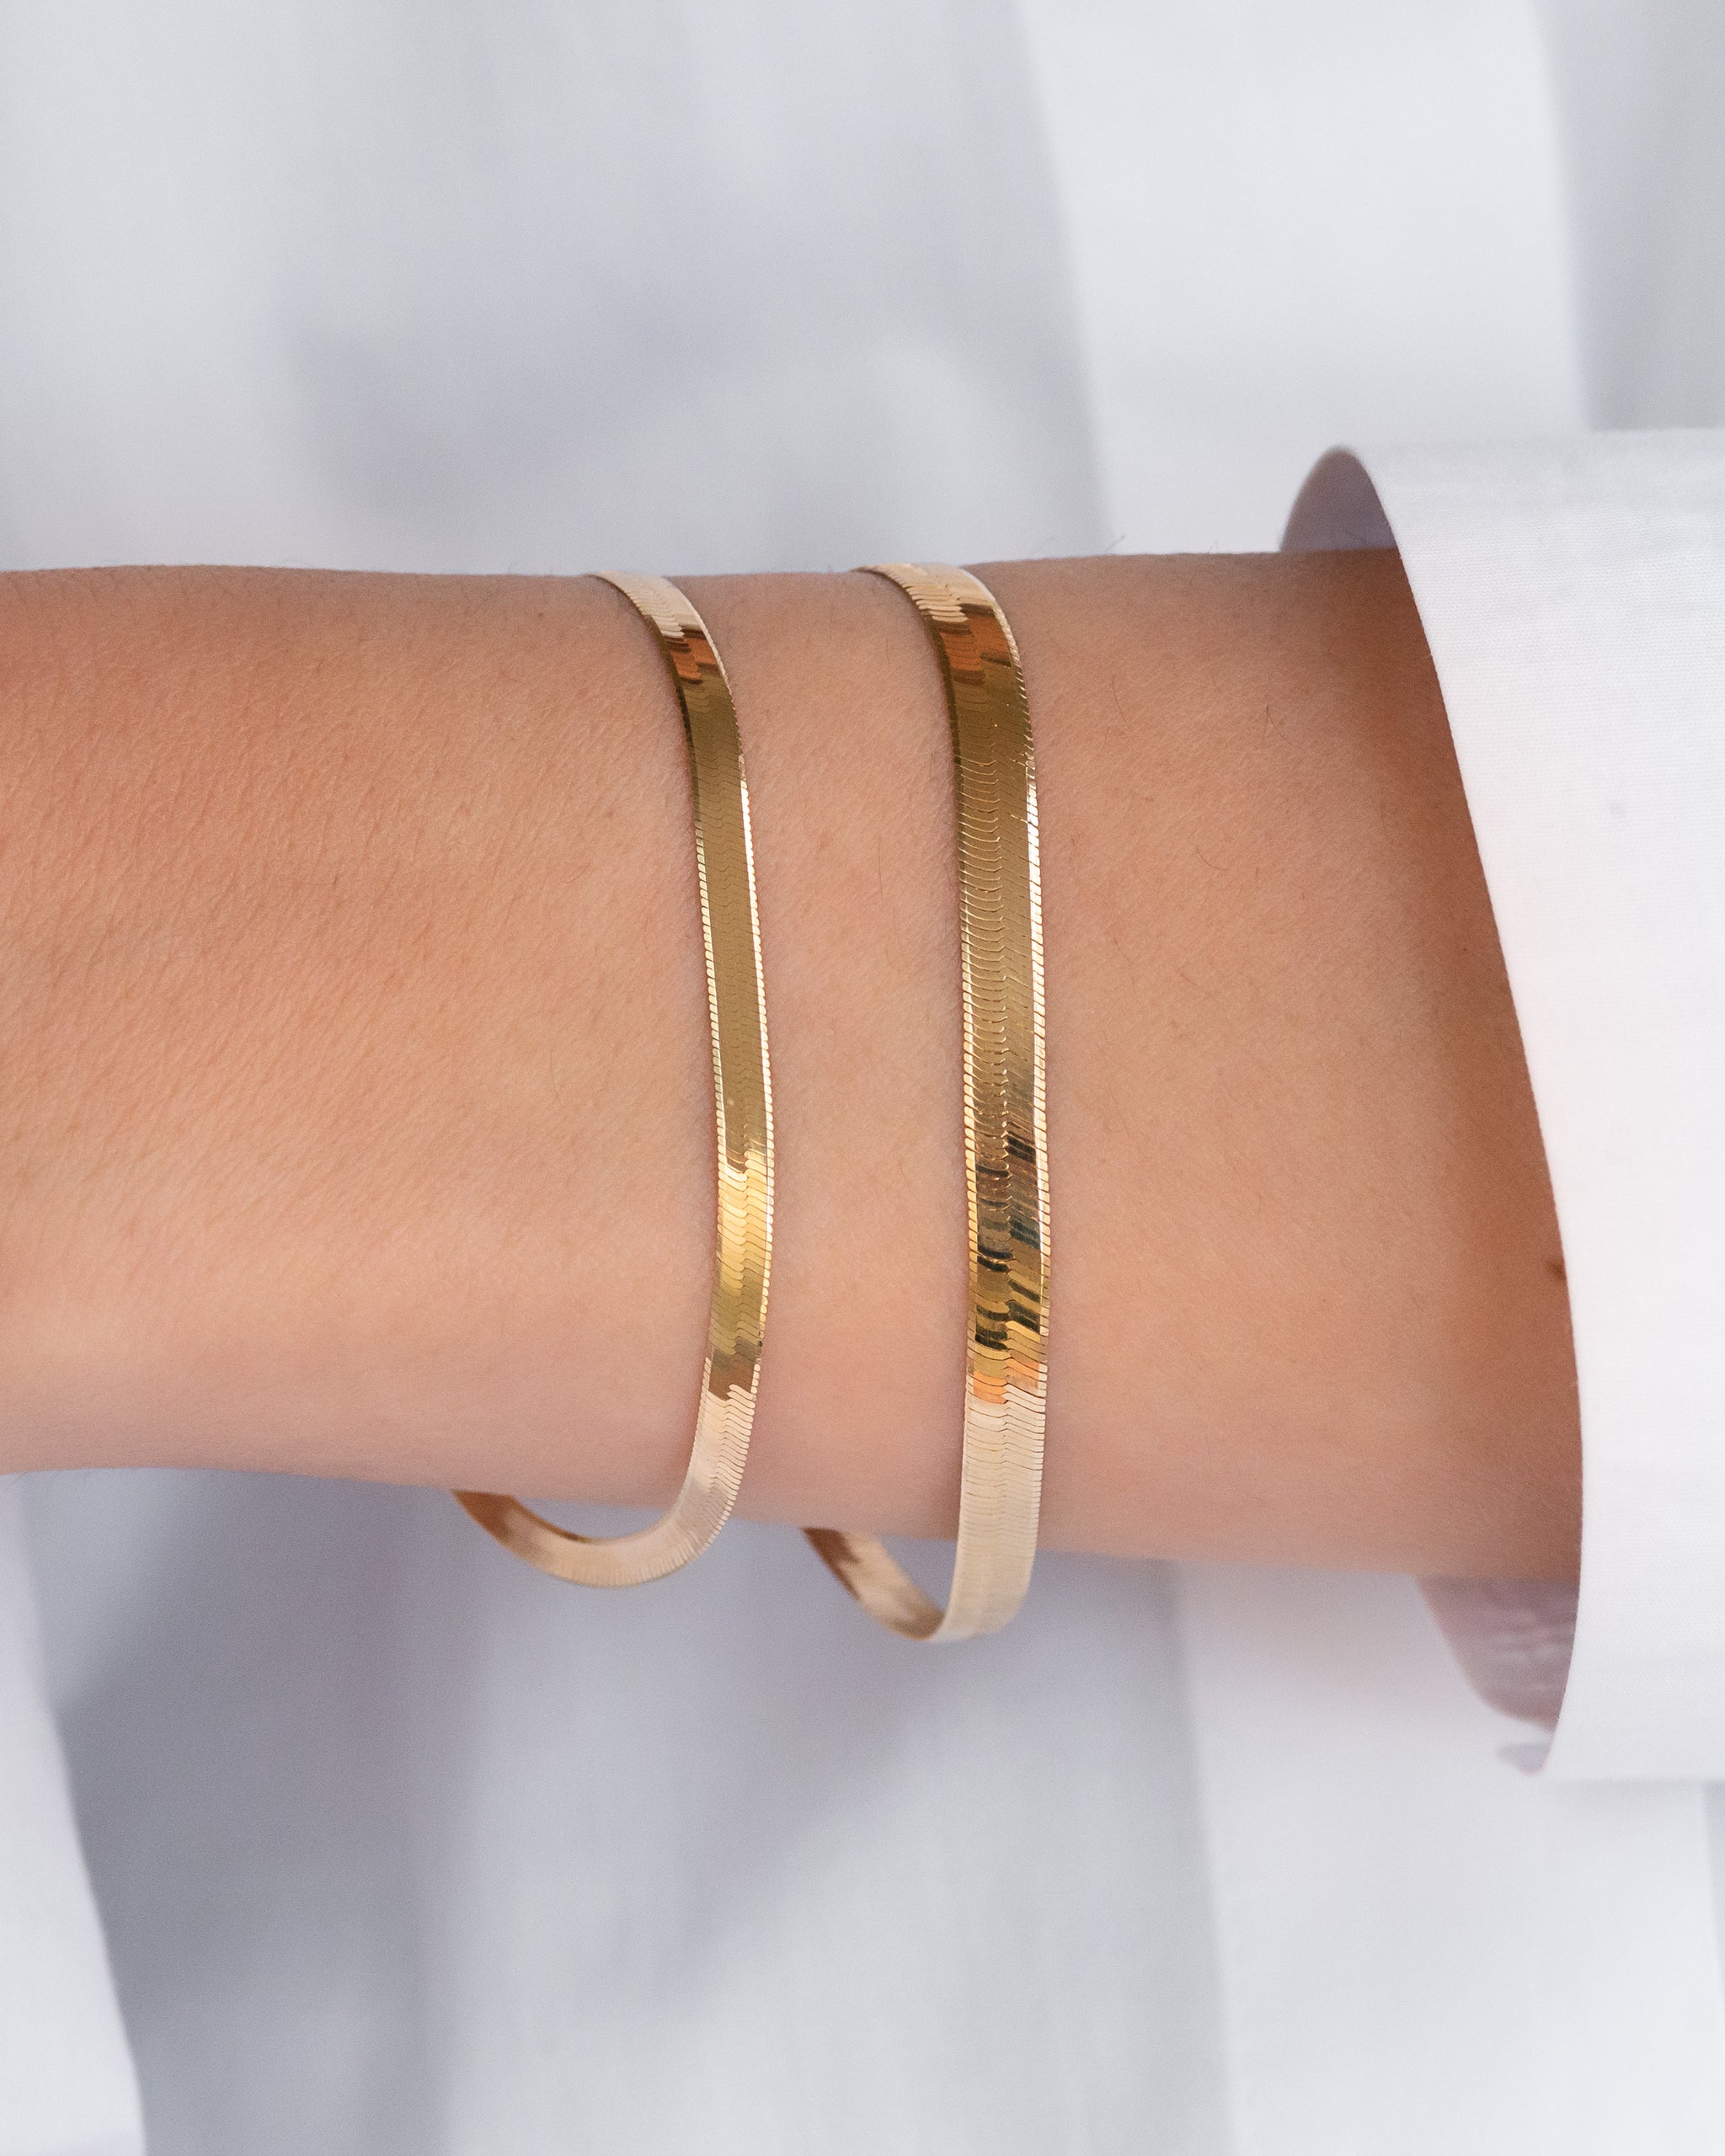 14k Gold Cuff Bracelet, Handmade | Stephanie Robinson Jewelry